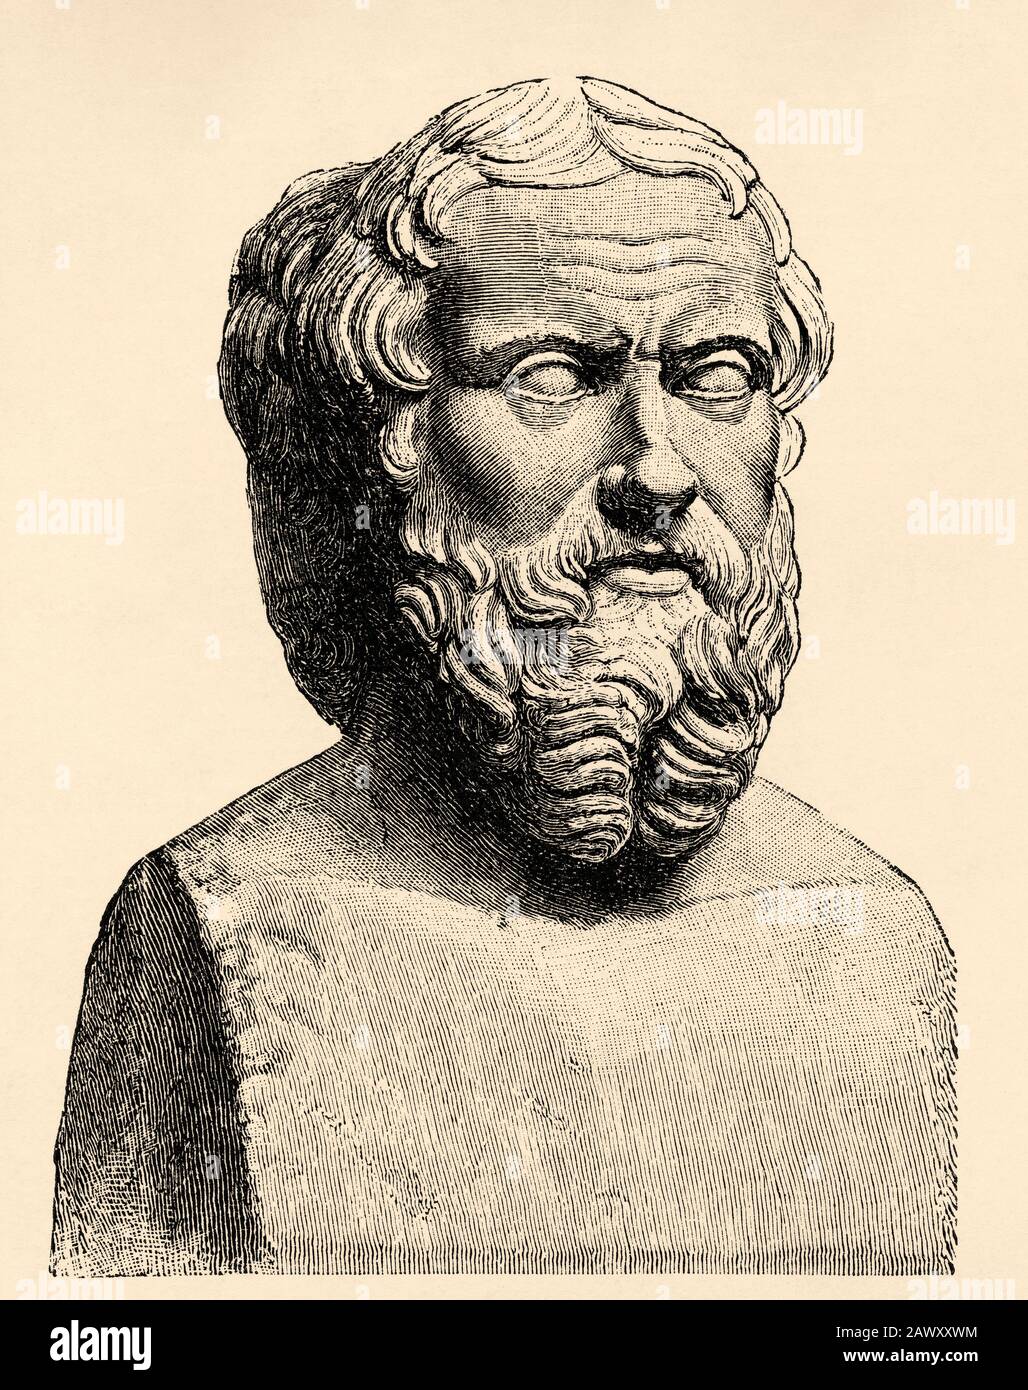 Erodoto di Halicarnasso, era uno storico greco e geografo che viveva tra il 484 e il 425 a. C., tradizionalmente considerato il padre della storia i Foto Stock